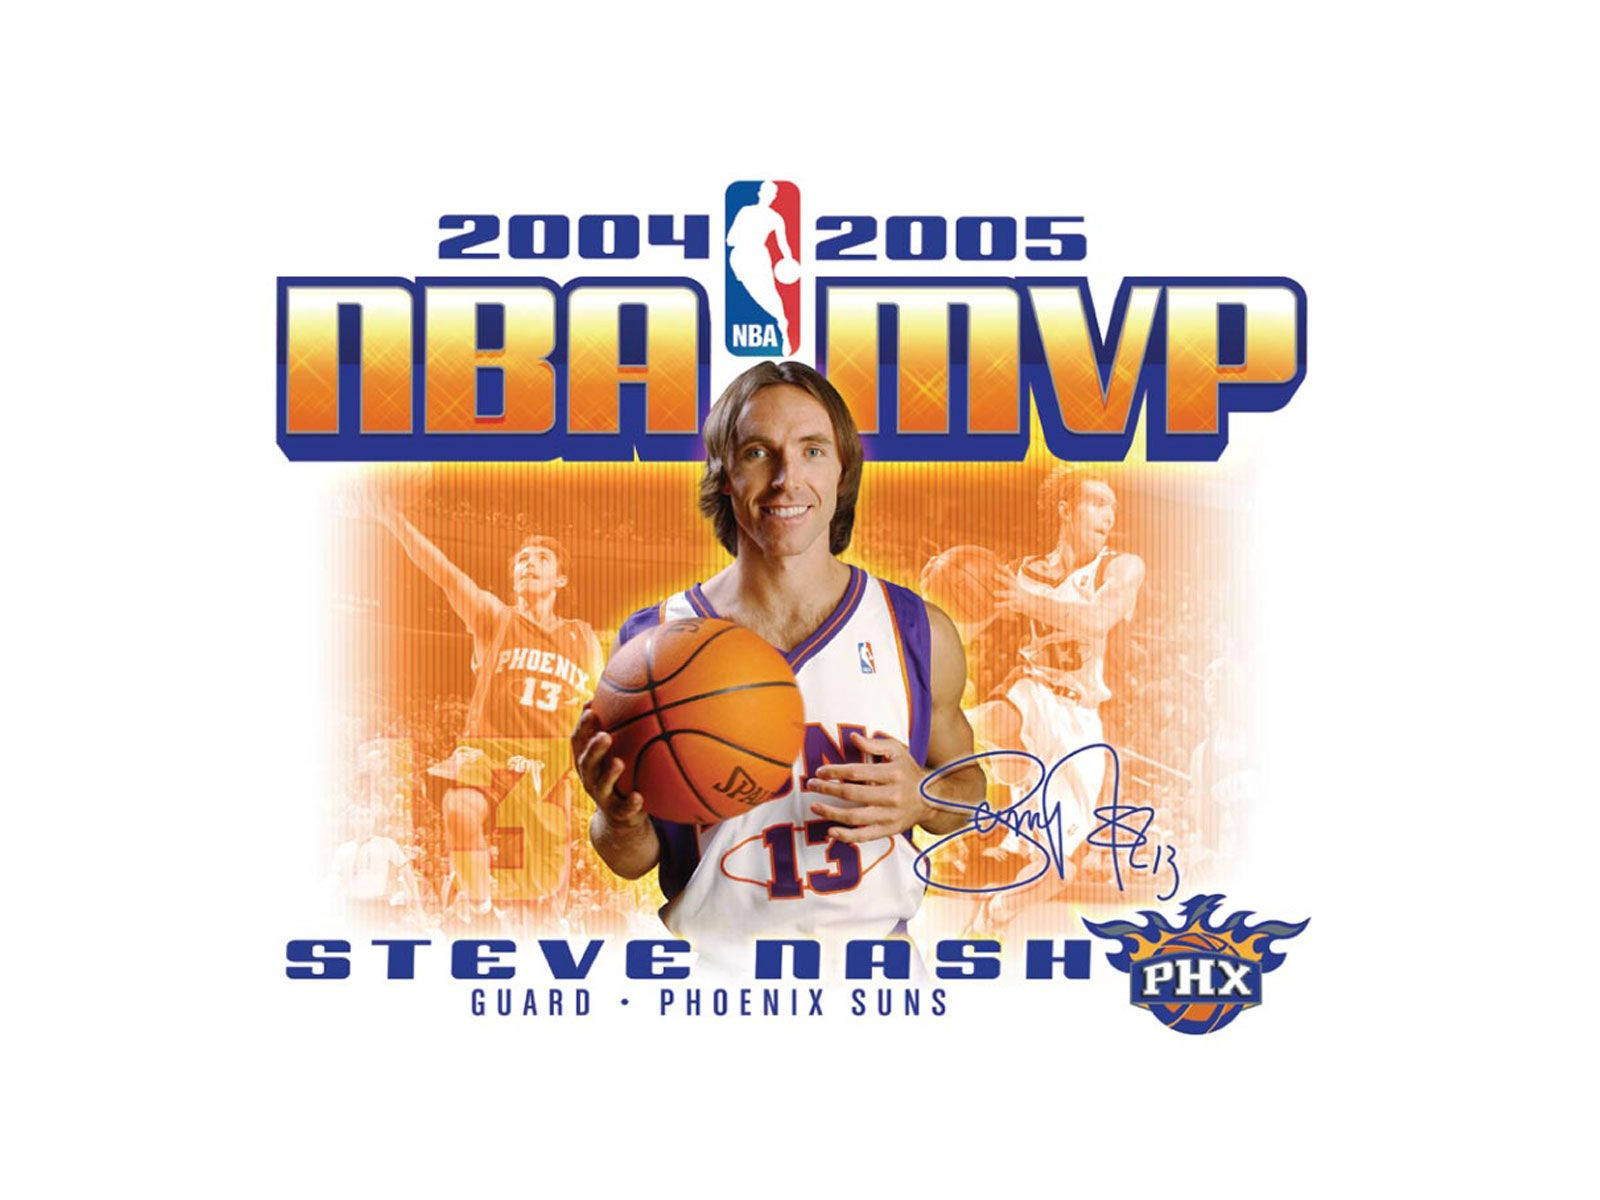 Steve Nash NBA 2004 2005 MVP Wallpaper